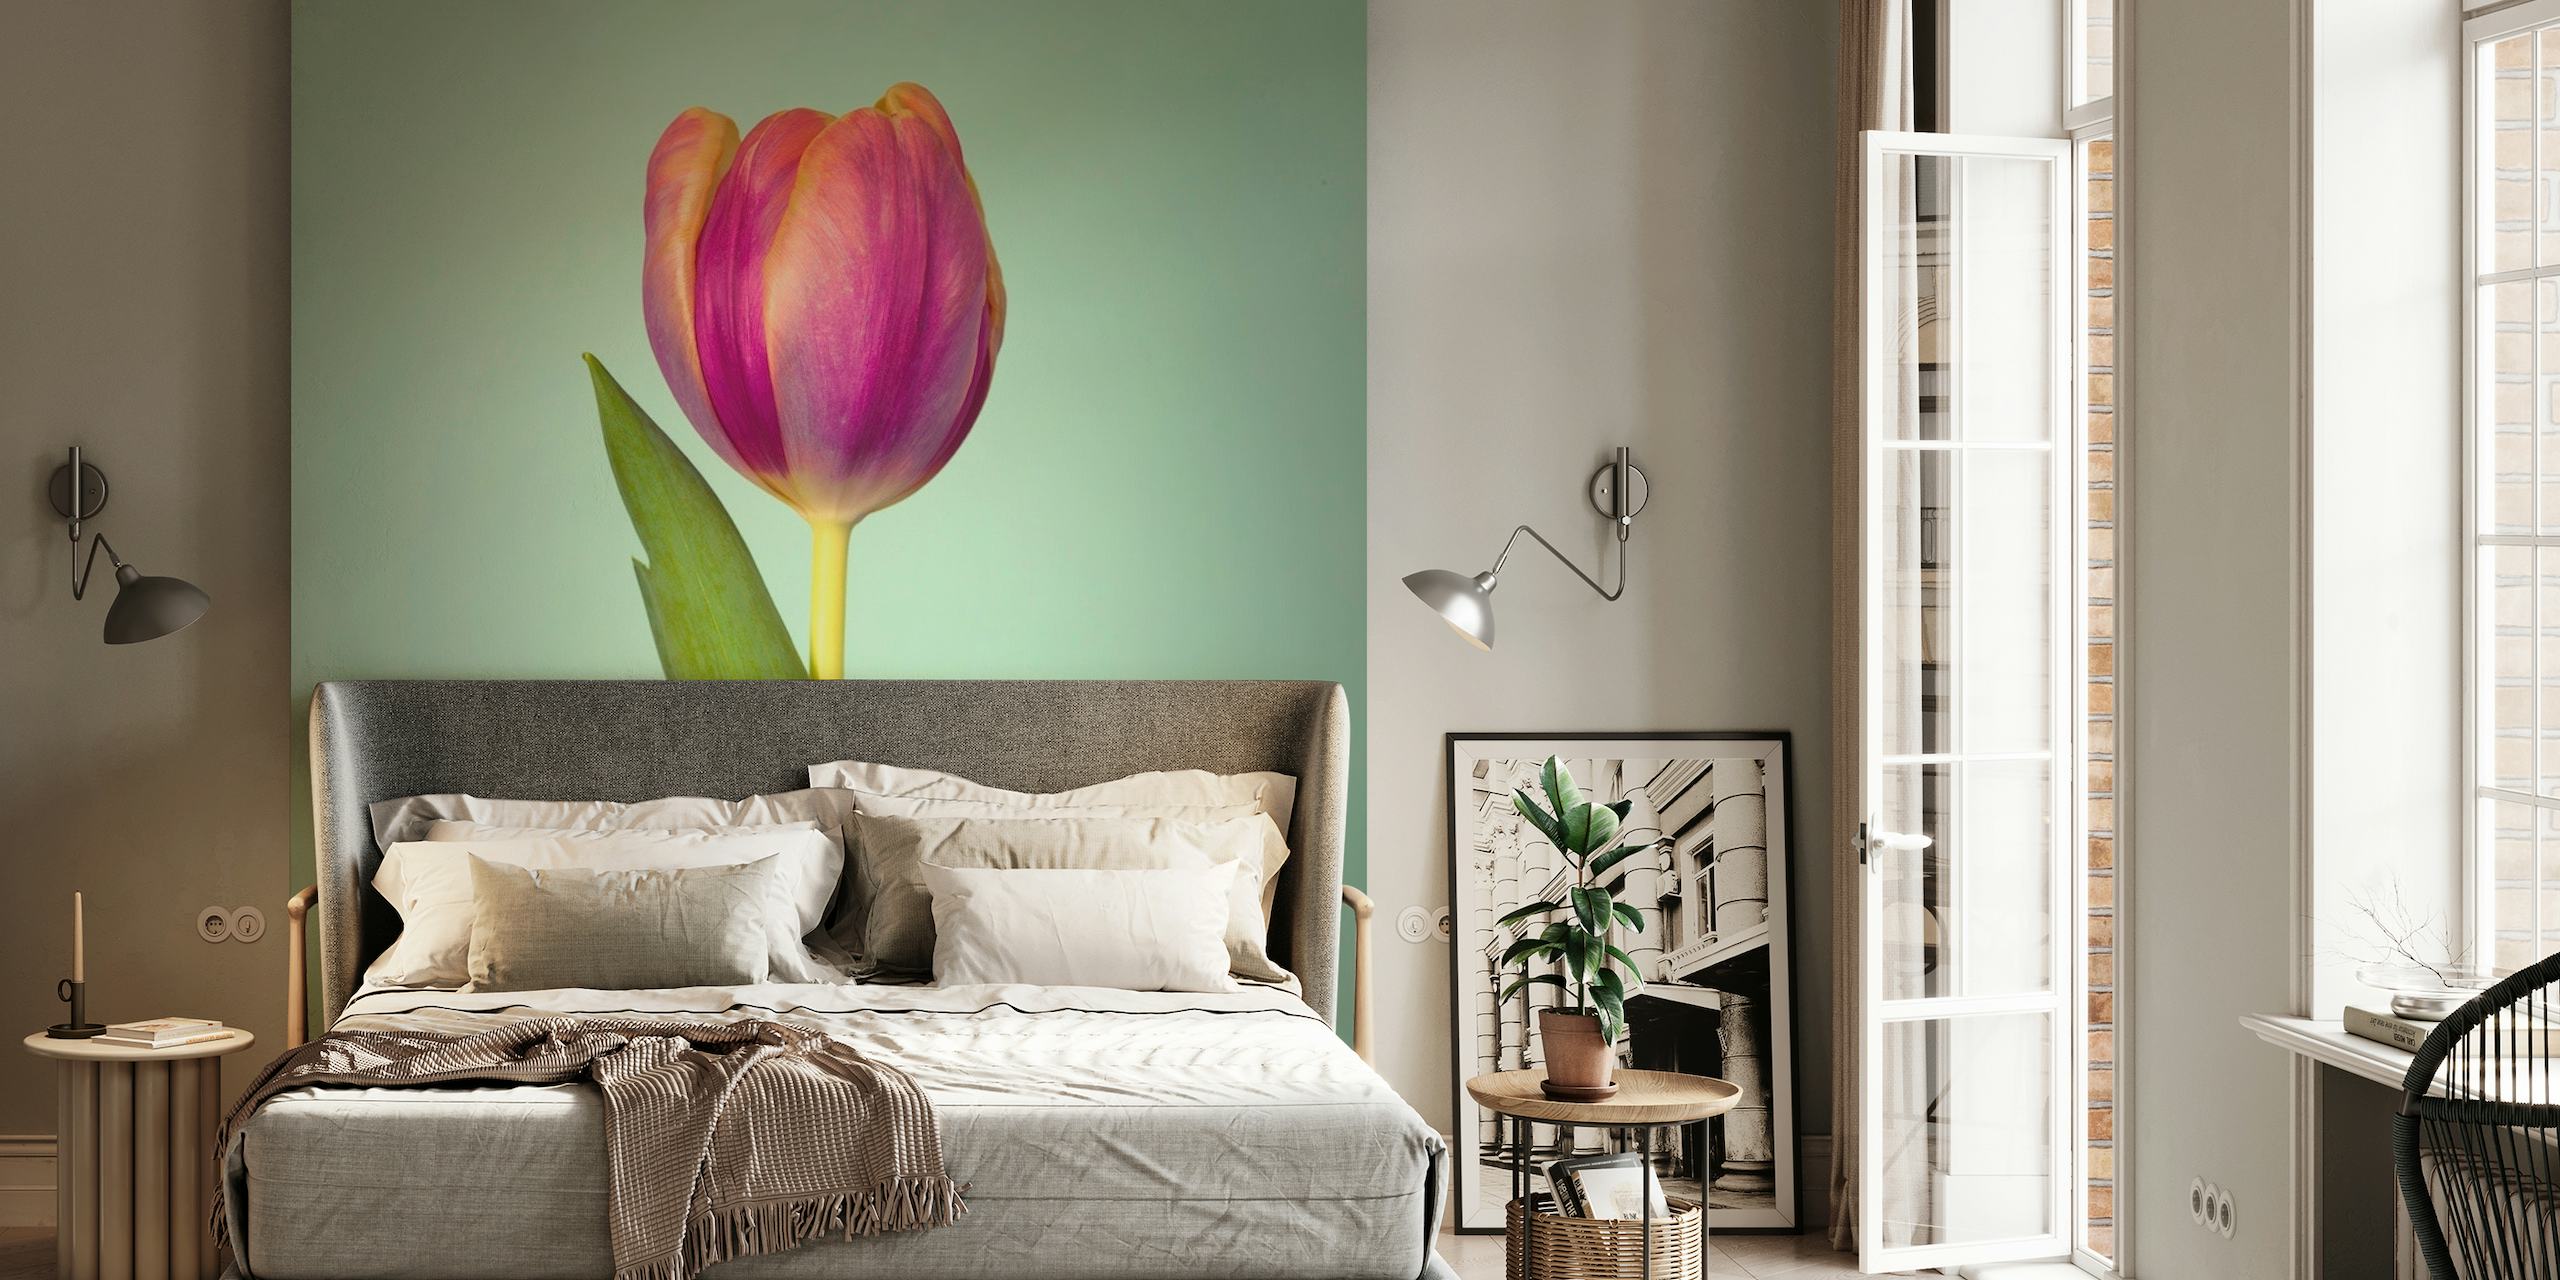 Single Tulip Flower papel pintado